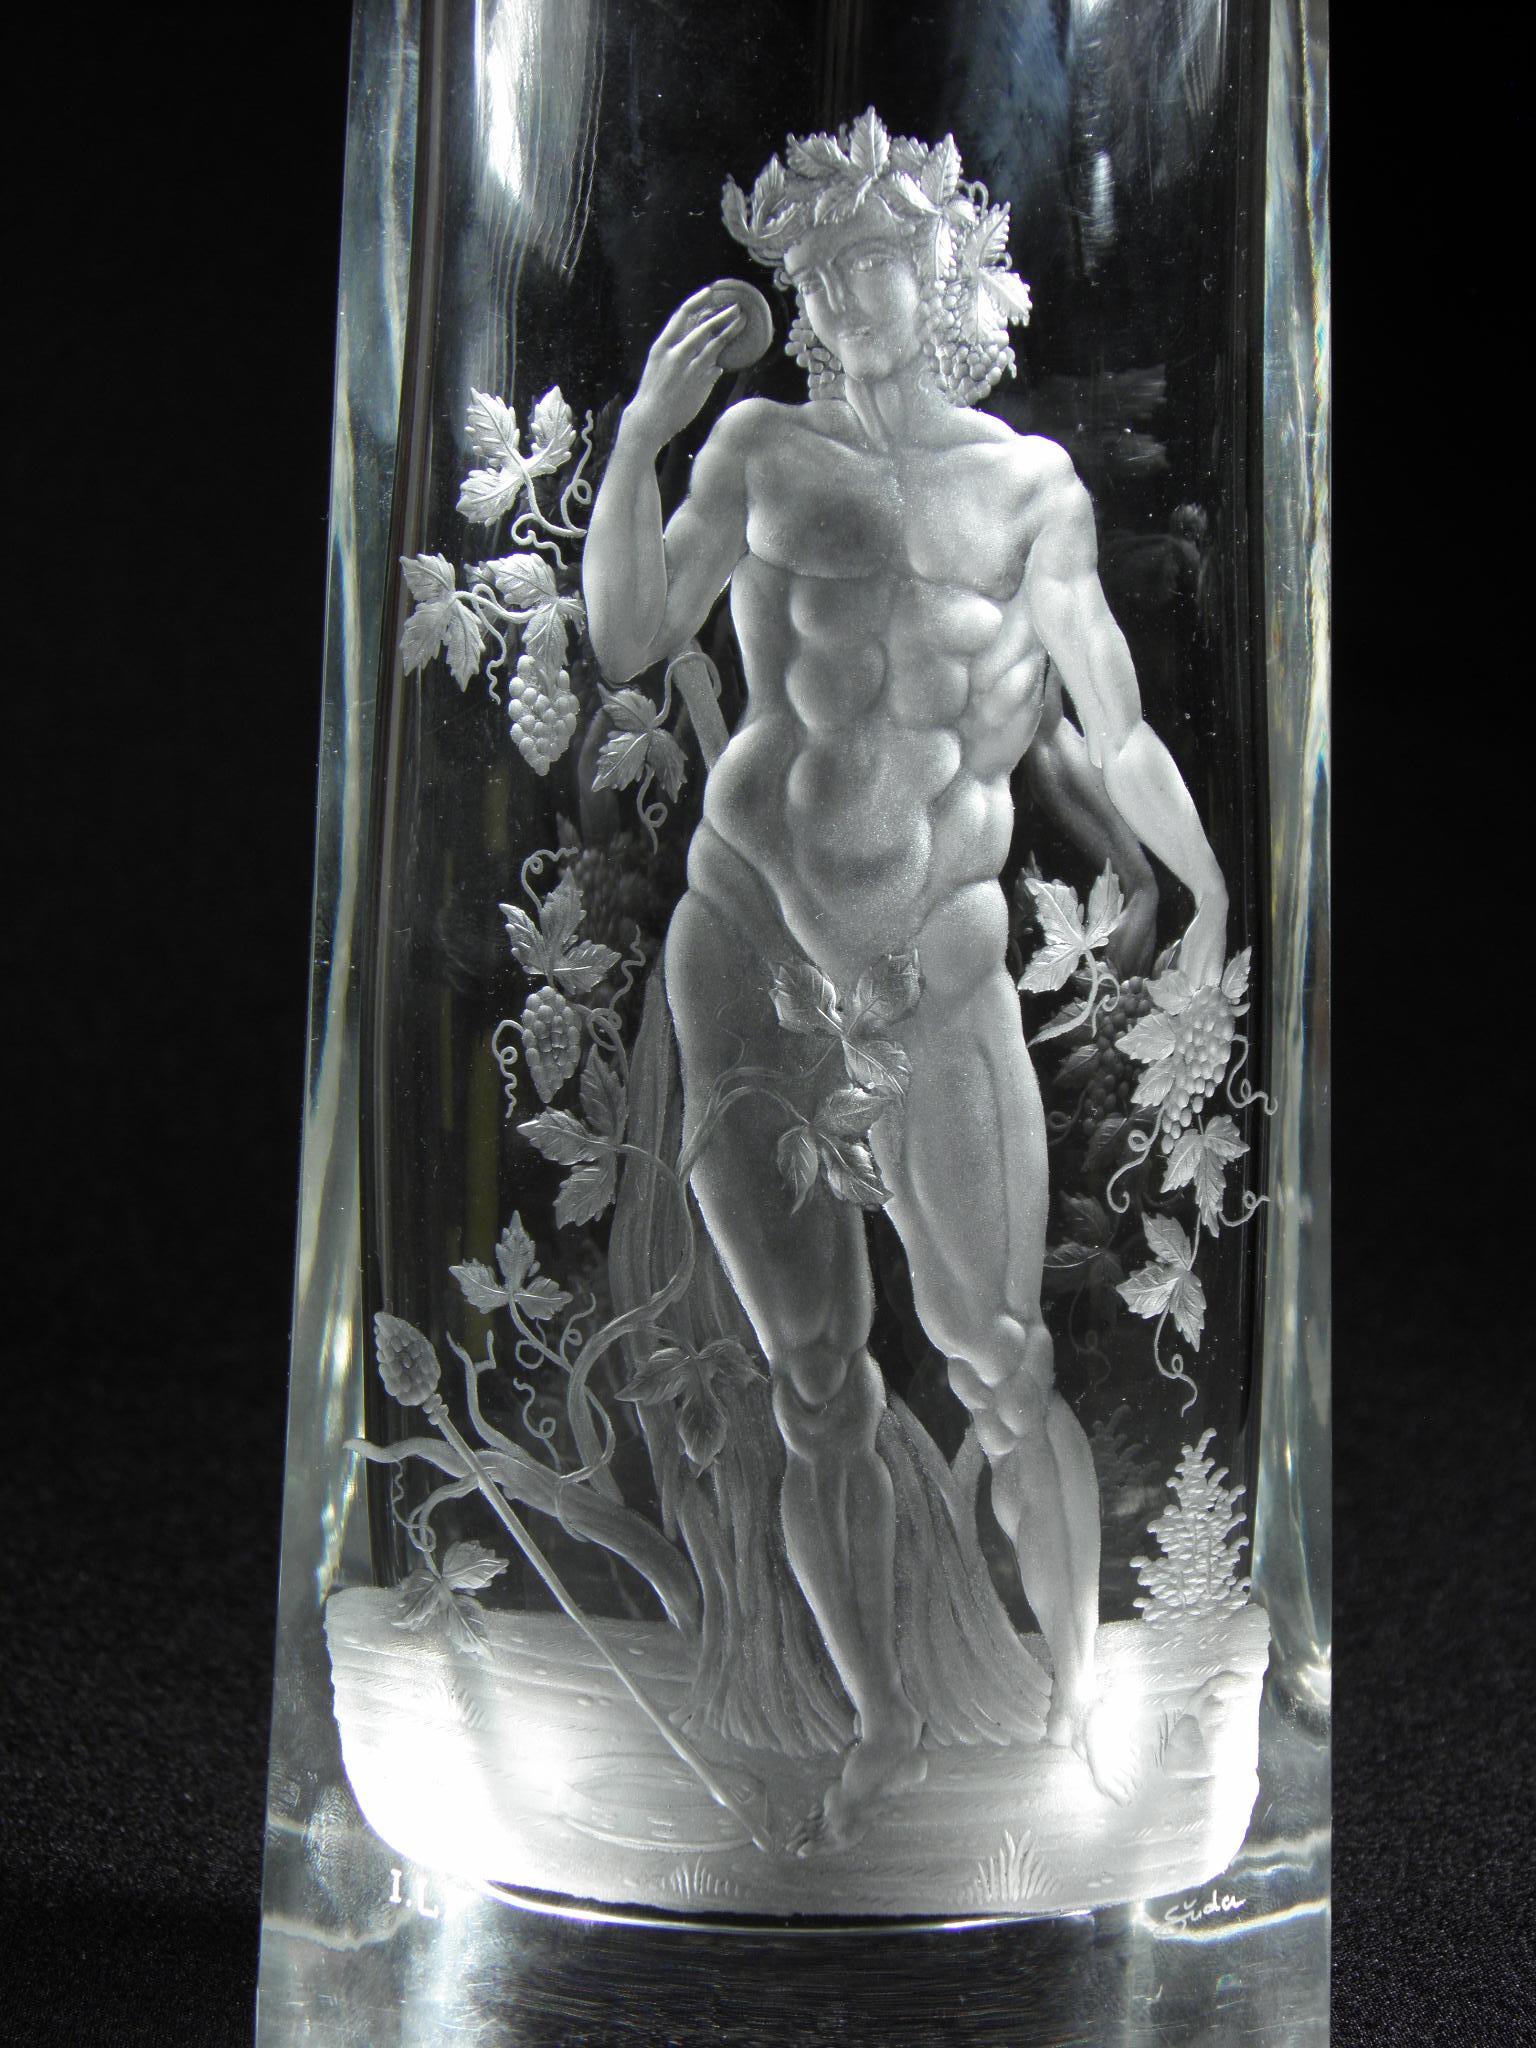 Belle pièce solitaire de verre de cristal tchèque du 20e siècle. Le vase est soufflé à la main, les bords coupés et avec une gravure artistique figurative d'un jeune Bacchus.